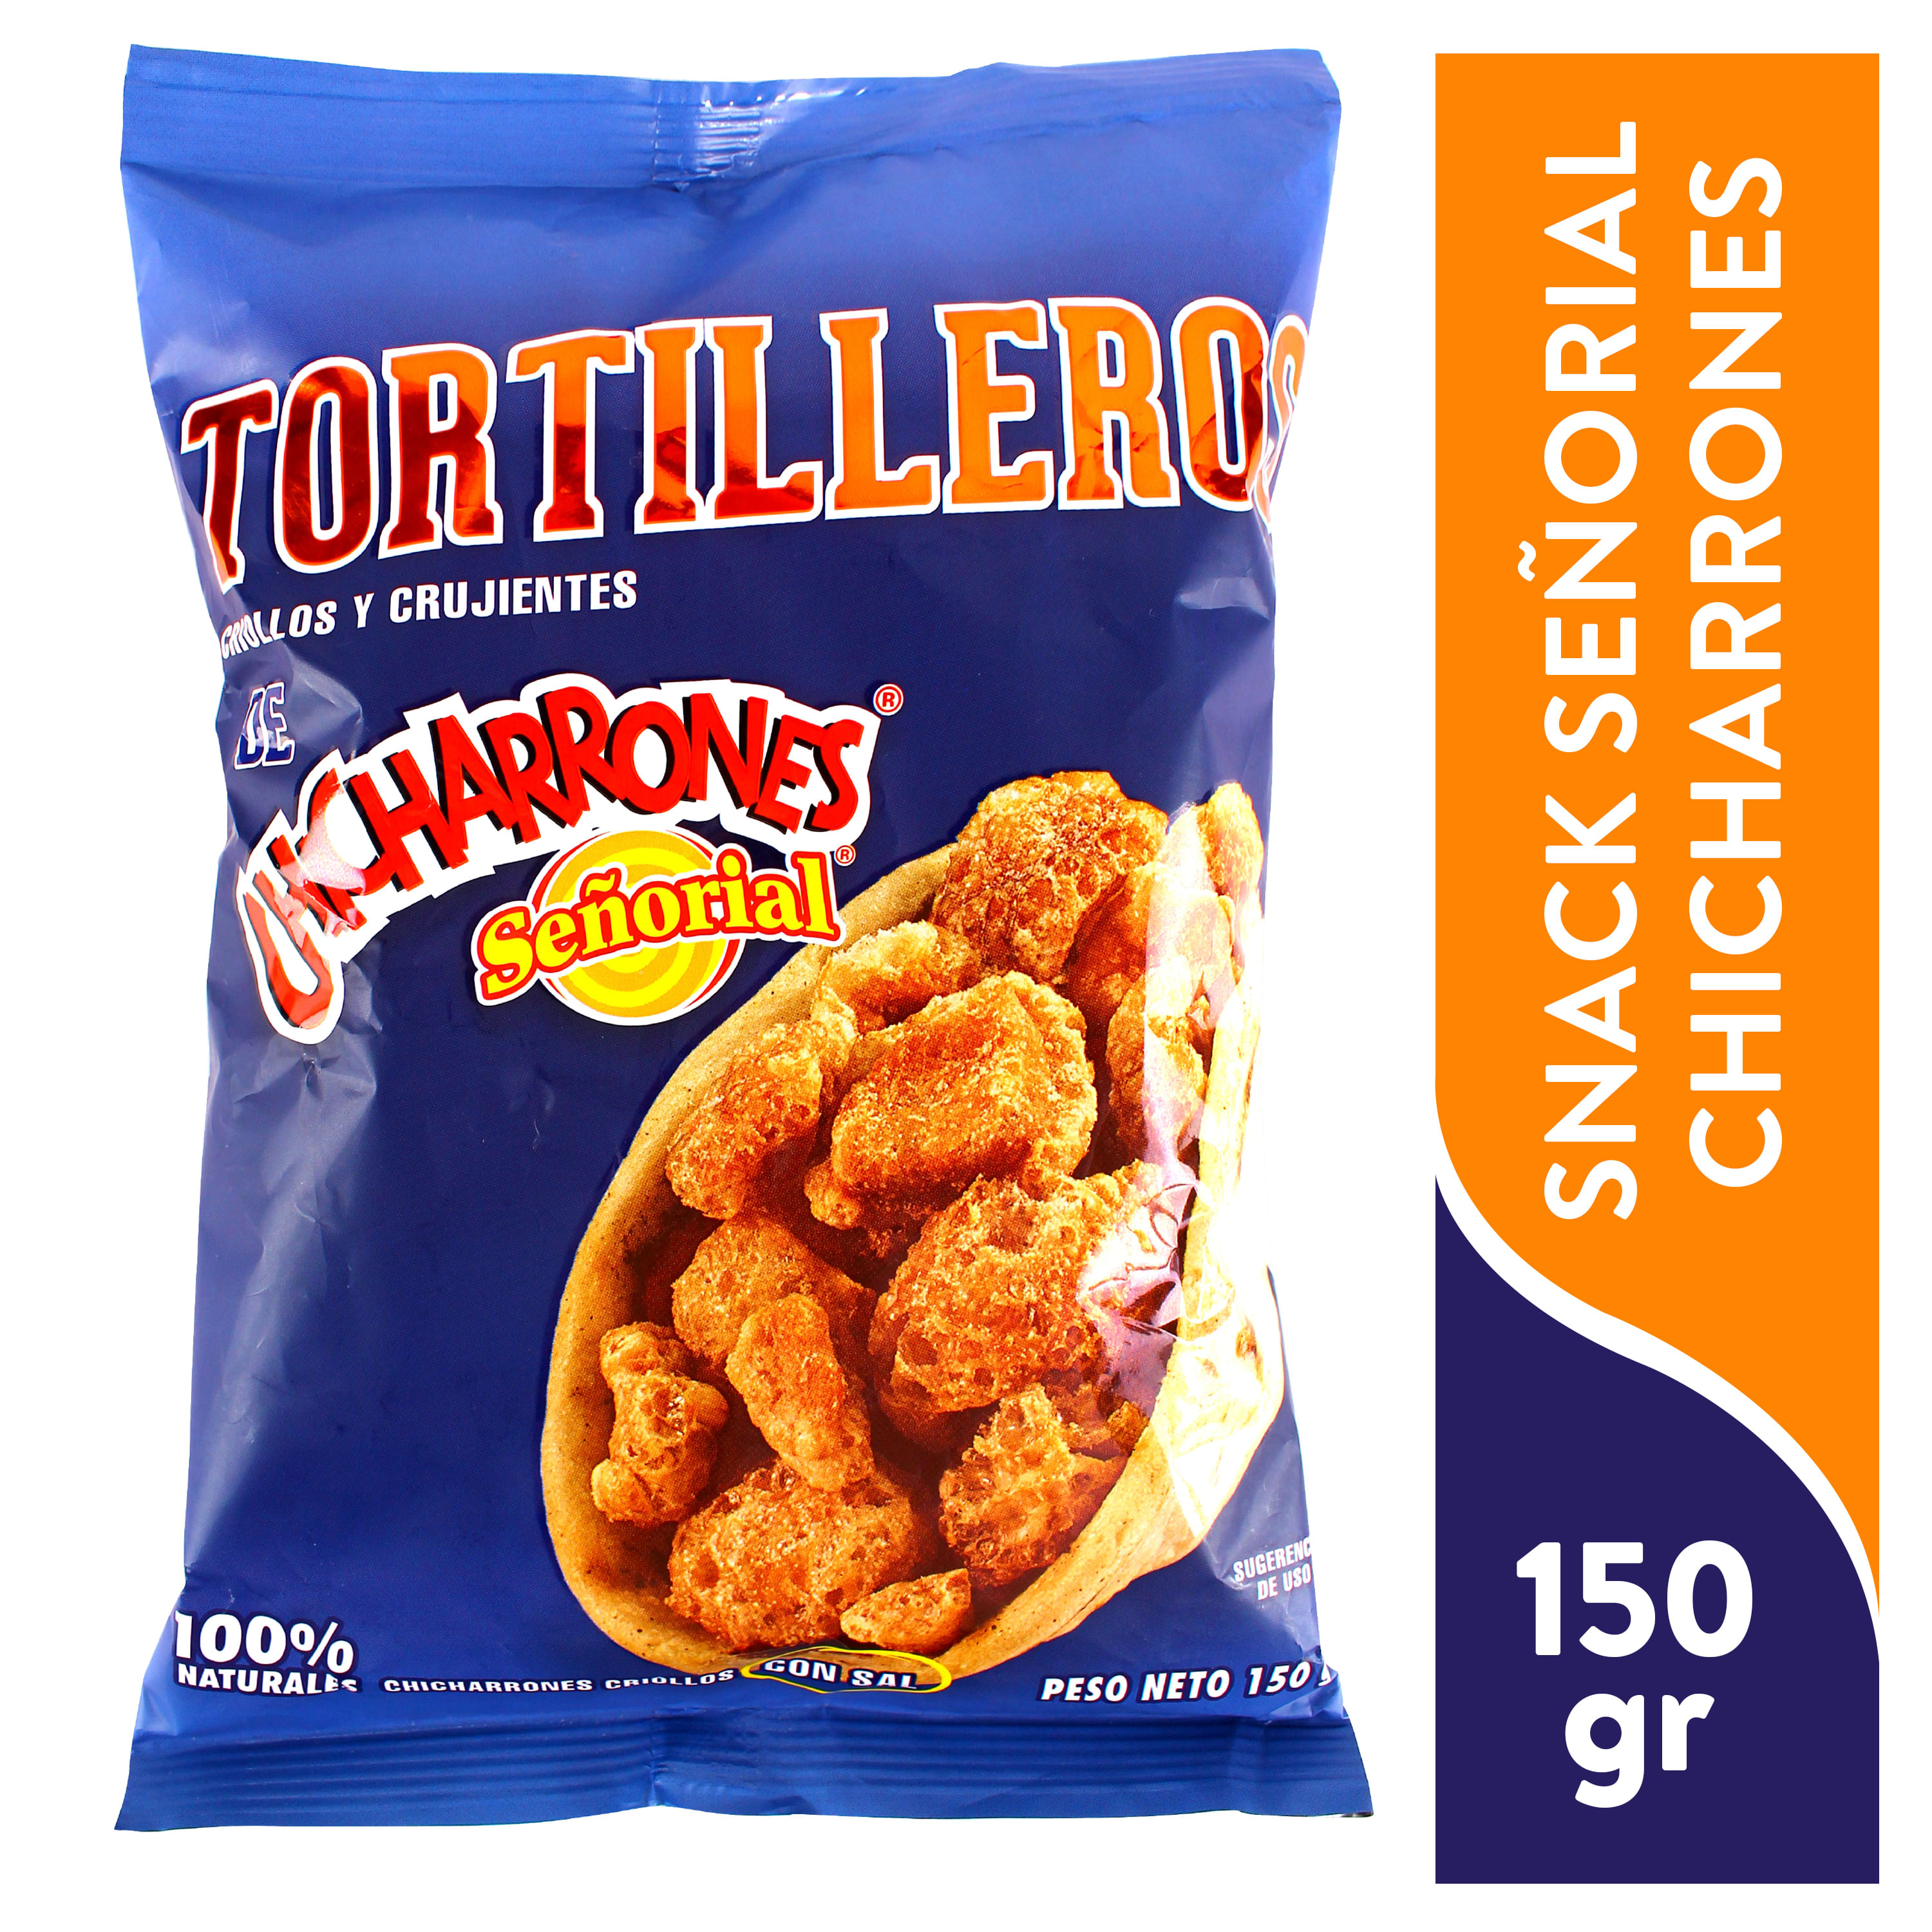 Chicharrones-Se-orial-Tortilleros-Criollos-y-Crujientes-150gr-1-31553